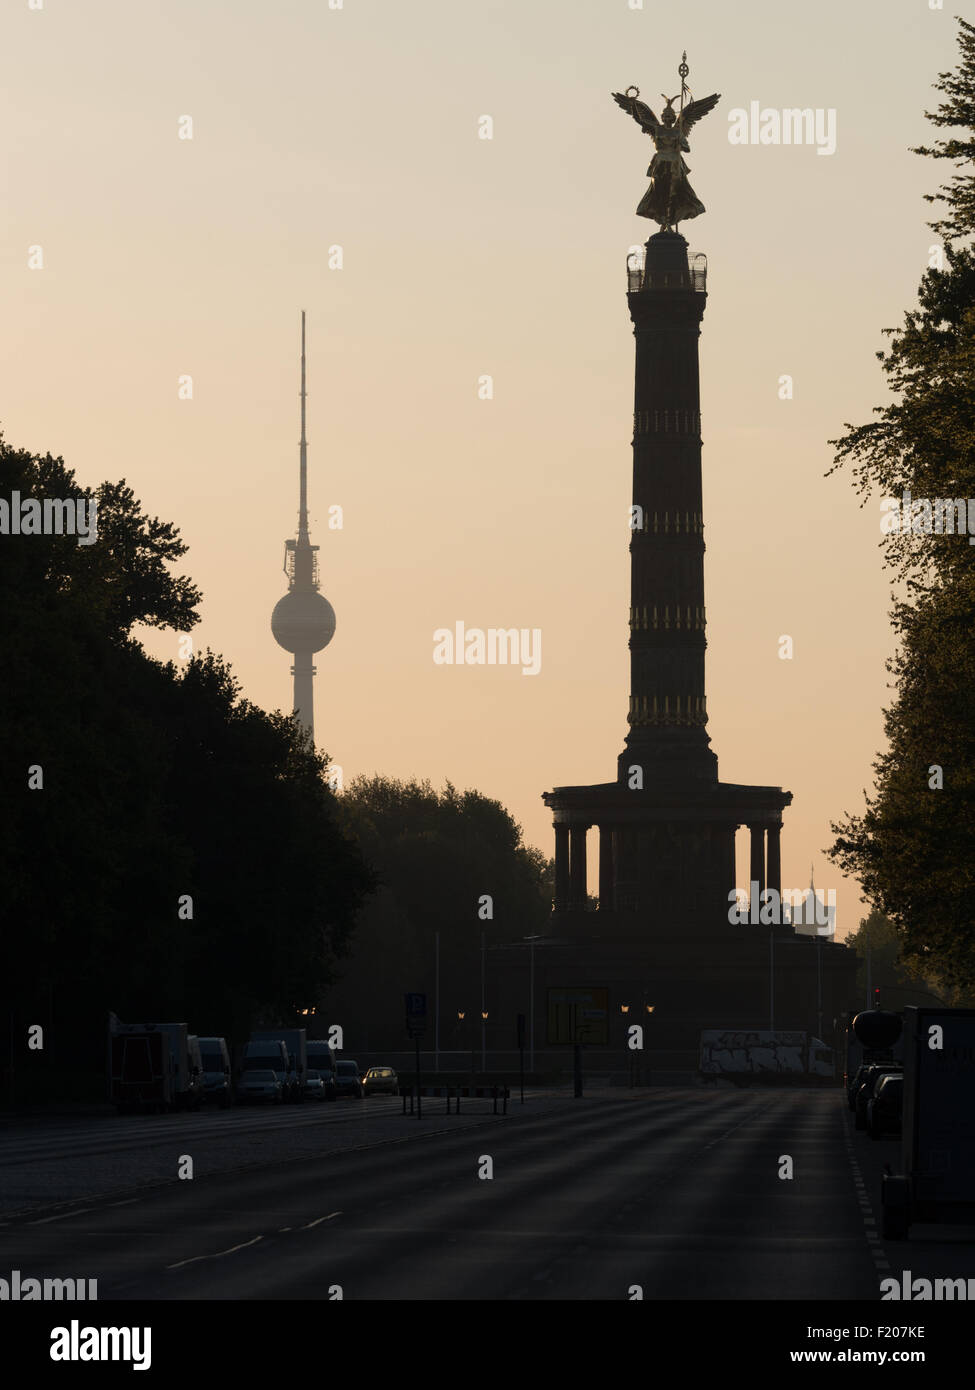 Siegessäule und Fernsehturm di Berlino im Gegenlicht Foto Stock